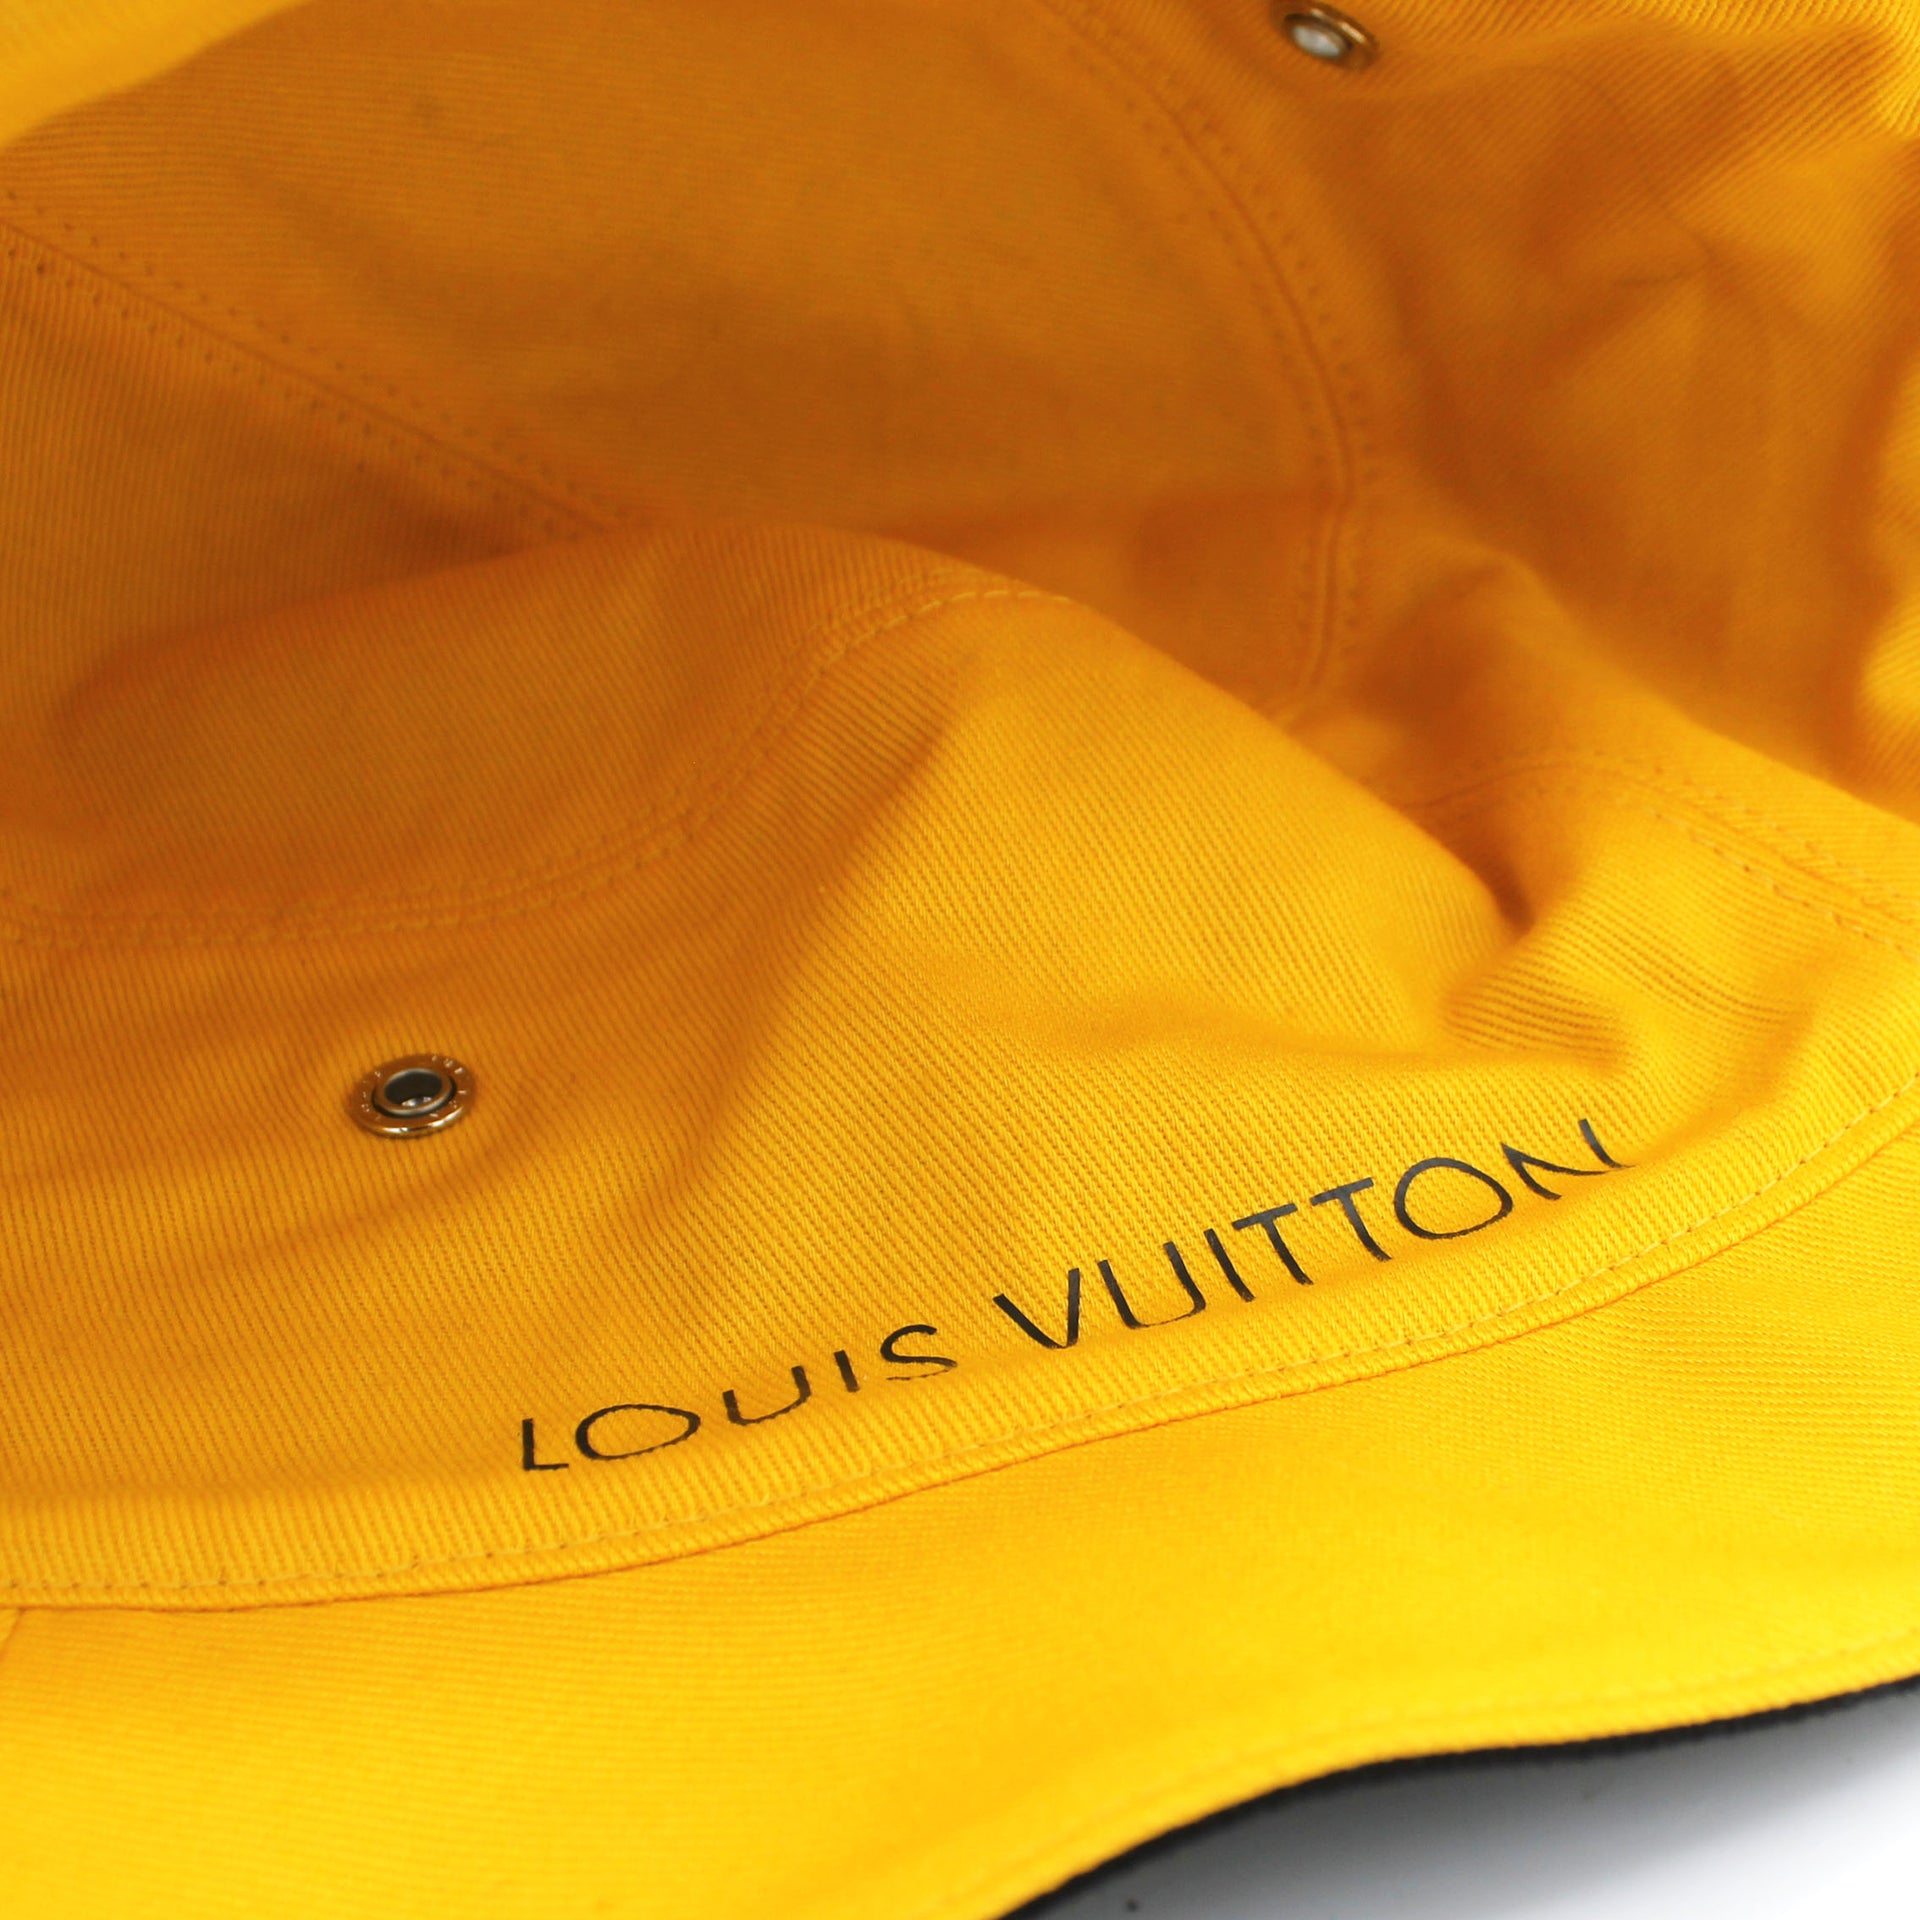 Buy Louis Vuitton Reversible Monogram Bucket Hat Orange Online in Australia